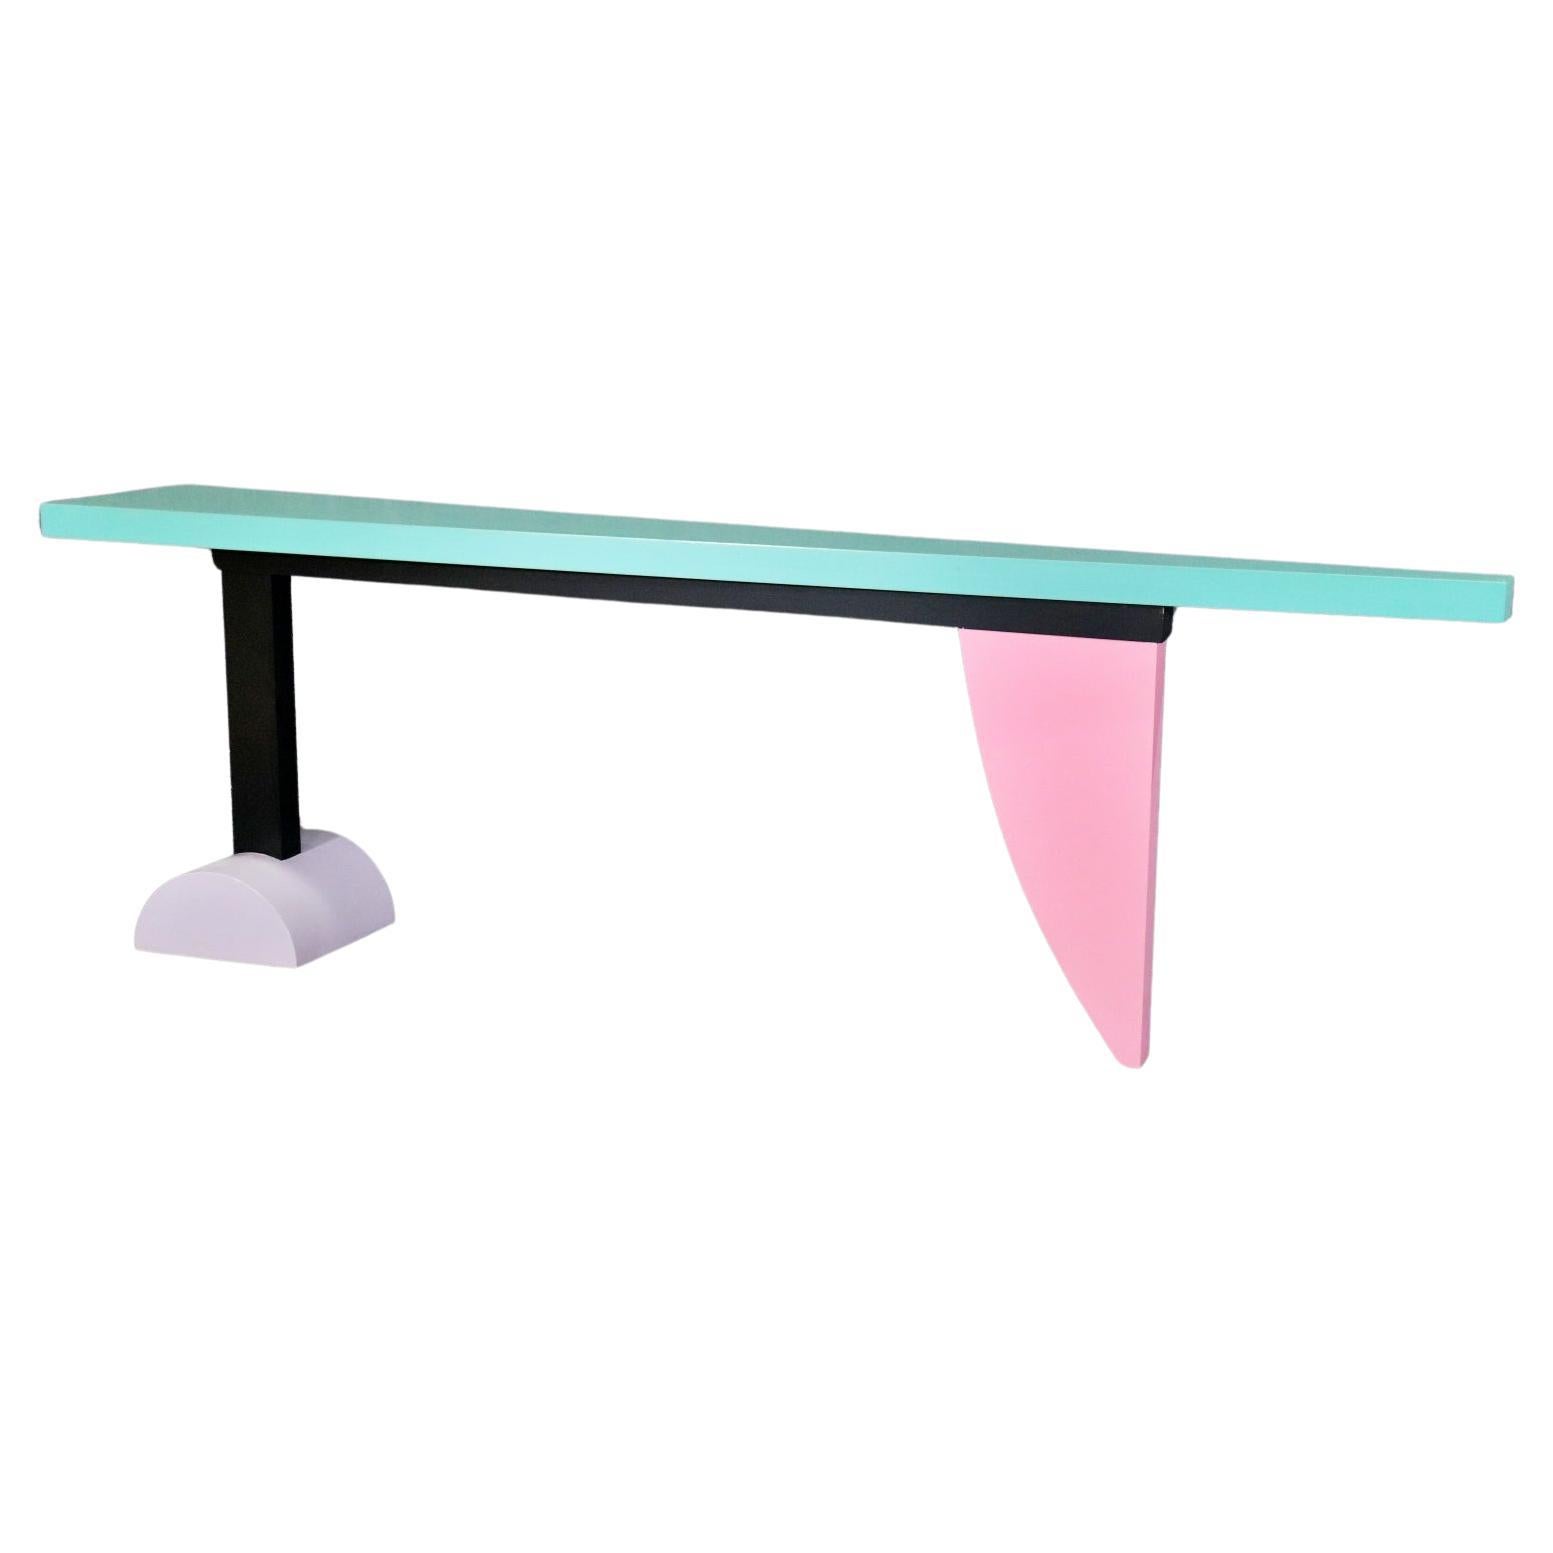 Table console peinte polychrome de style Memphis attribuée à Peter Shire